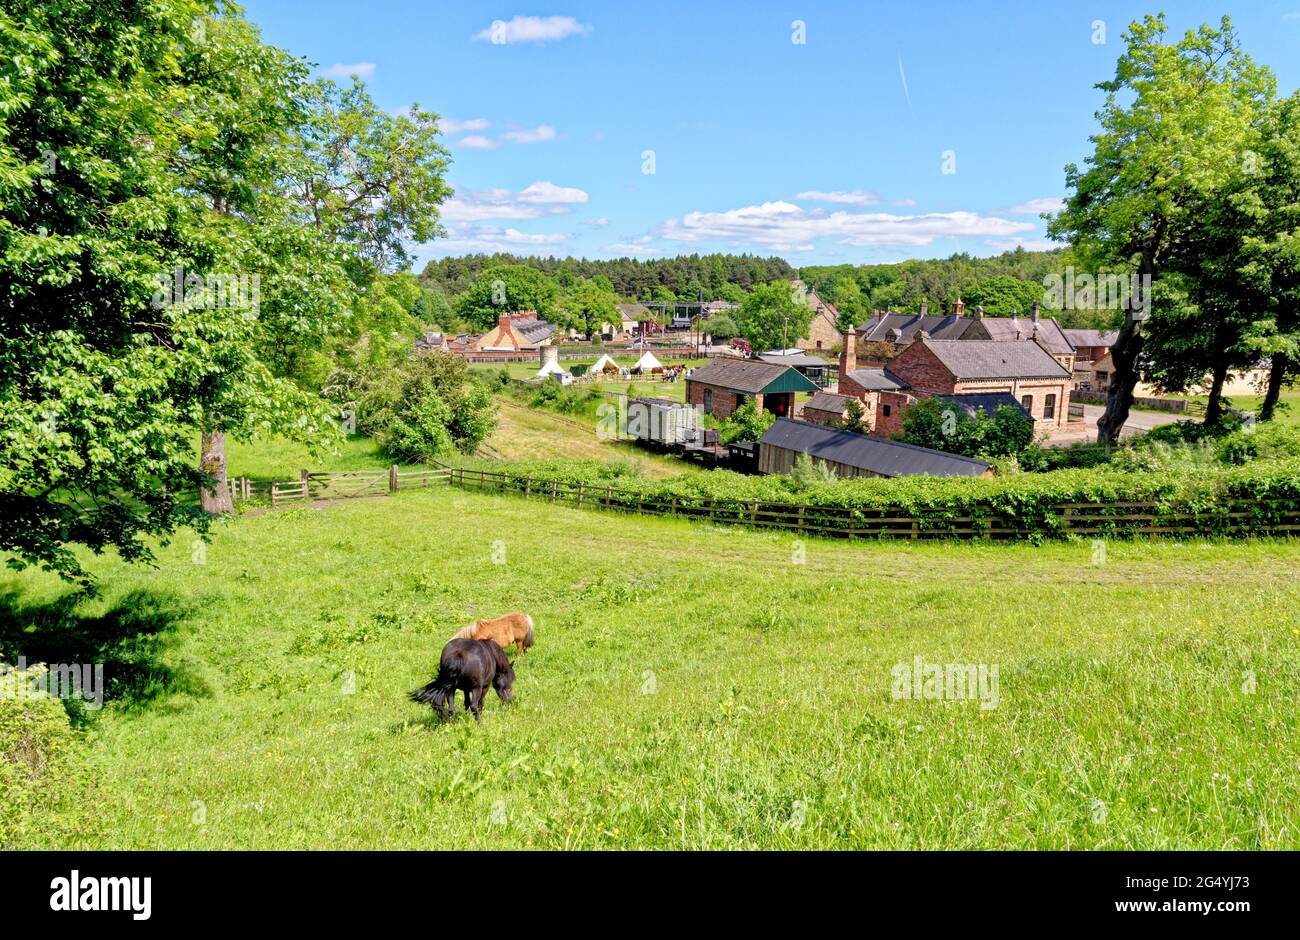 Les maisons de la collierie dans le village de Beamish Village, comté de Durham, Angleterre, Royaume-Uni, 12 juin 2021 Banque D'Images